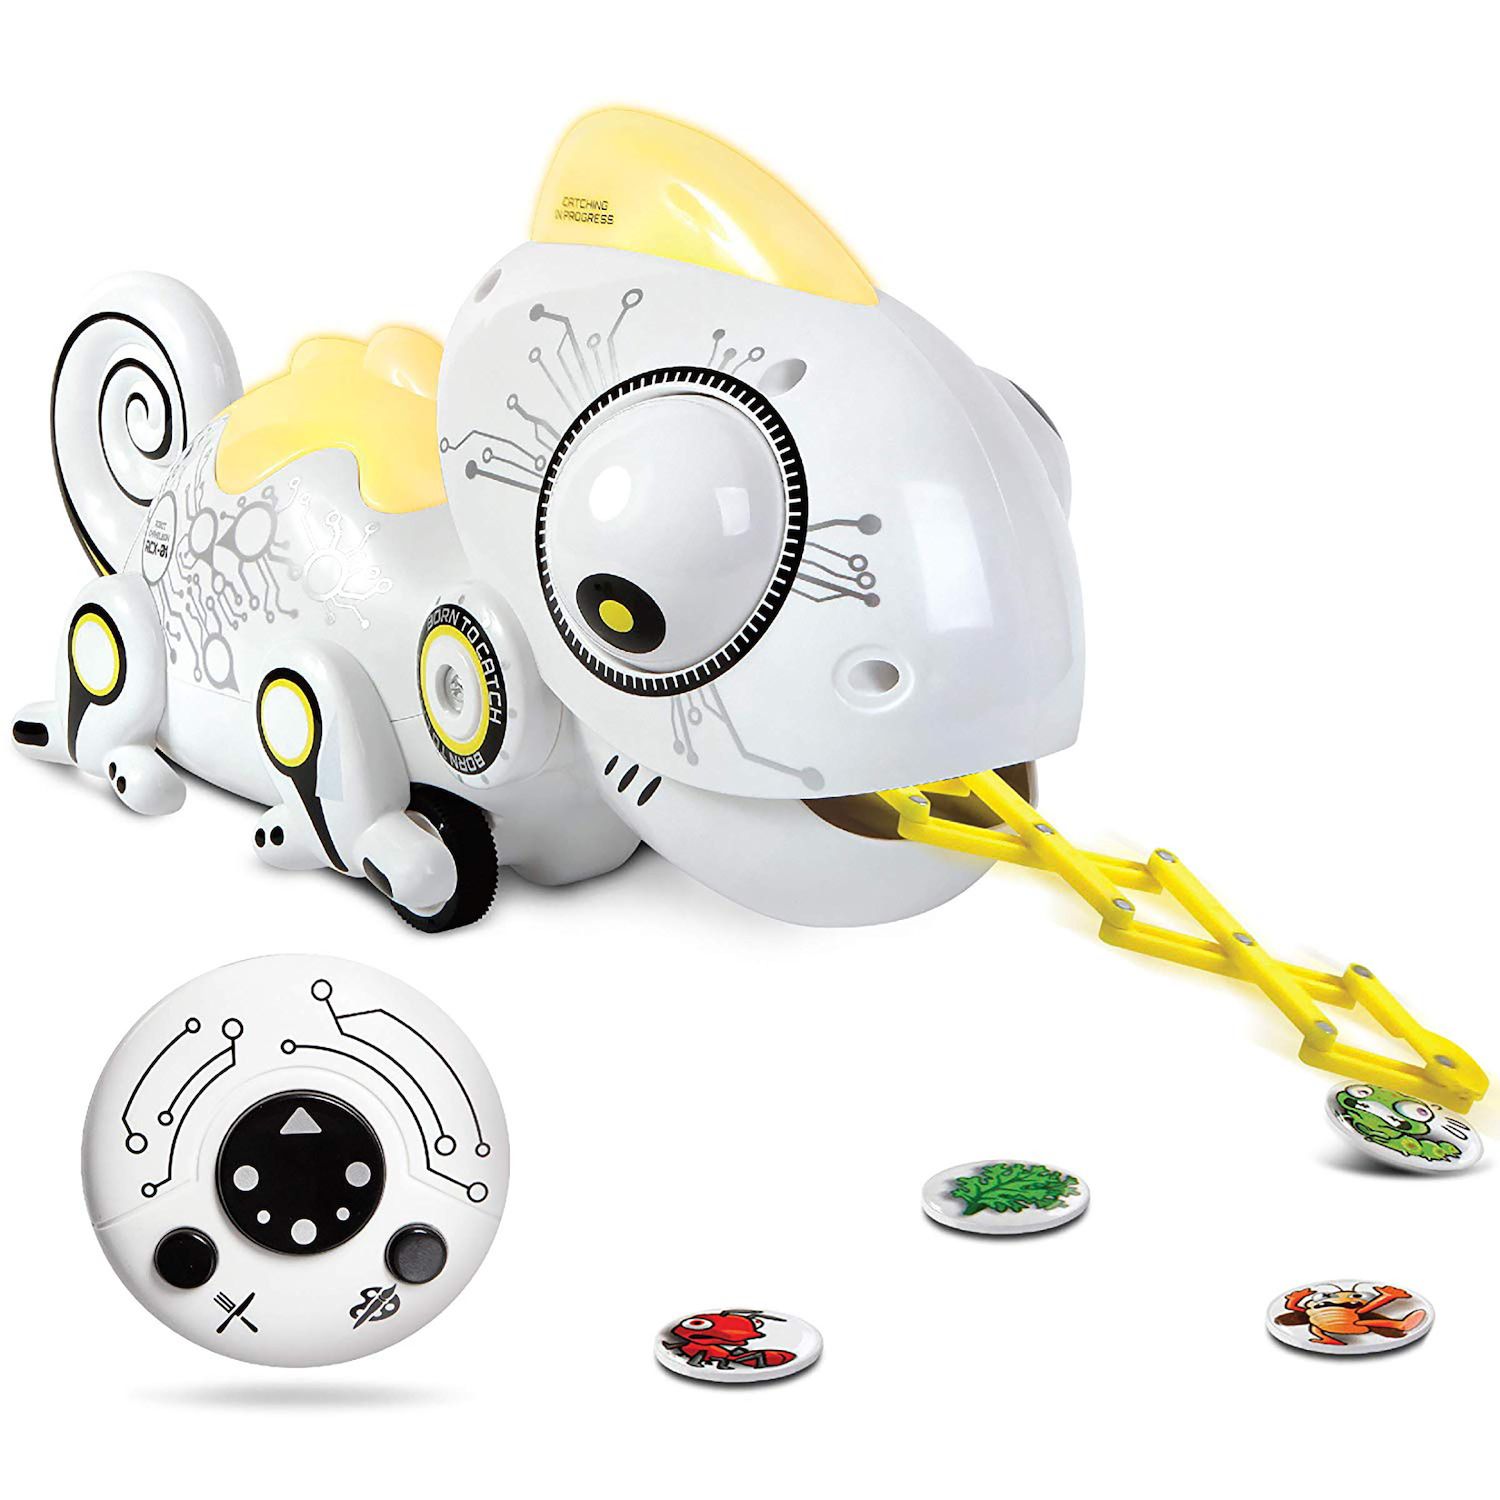 chameleon robot toy